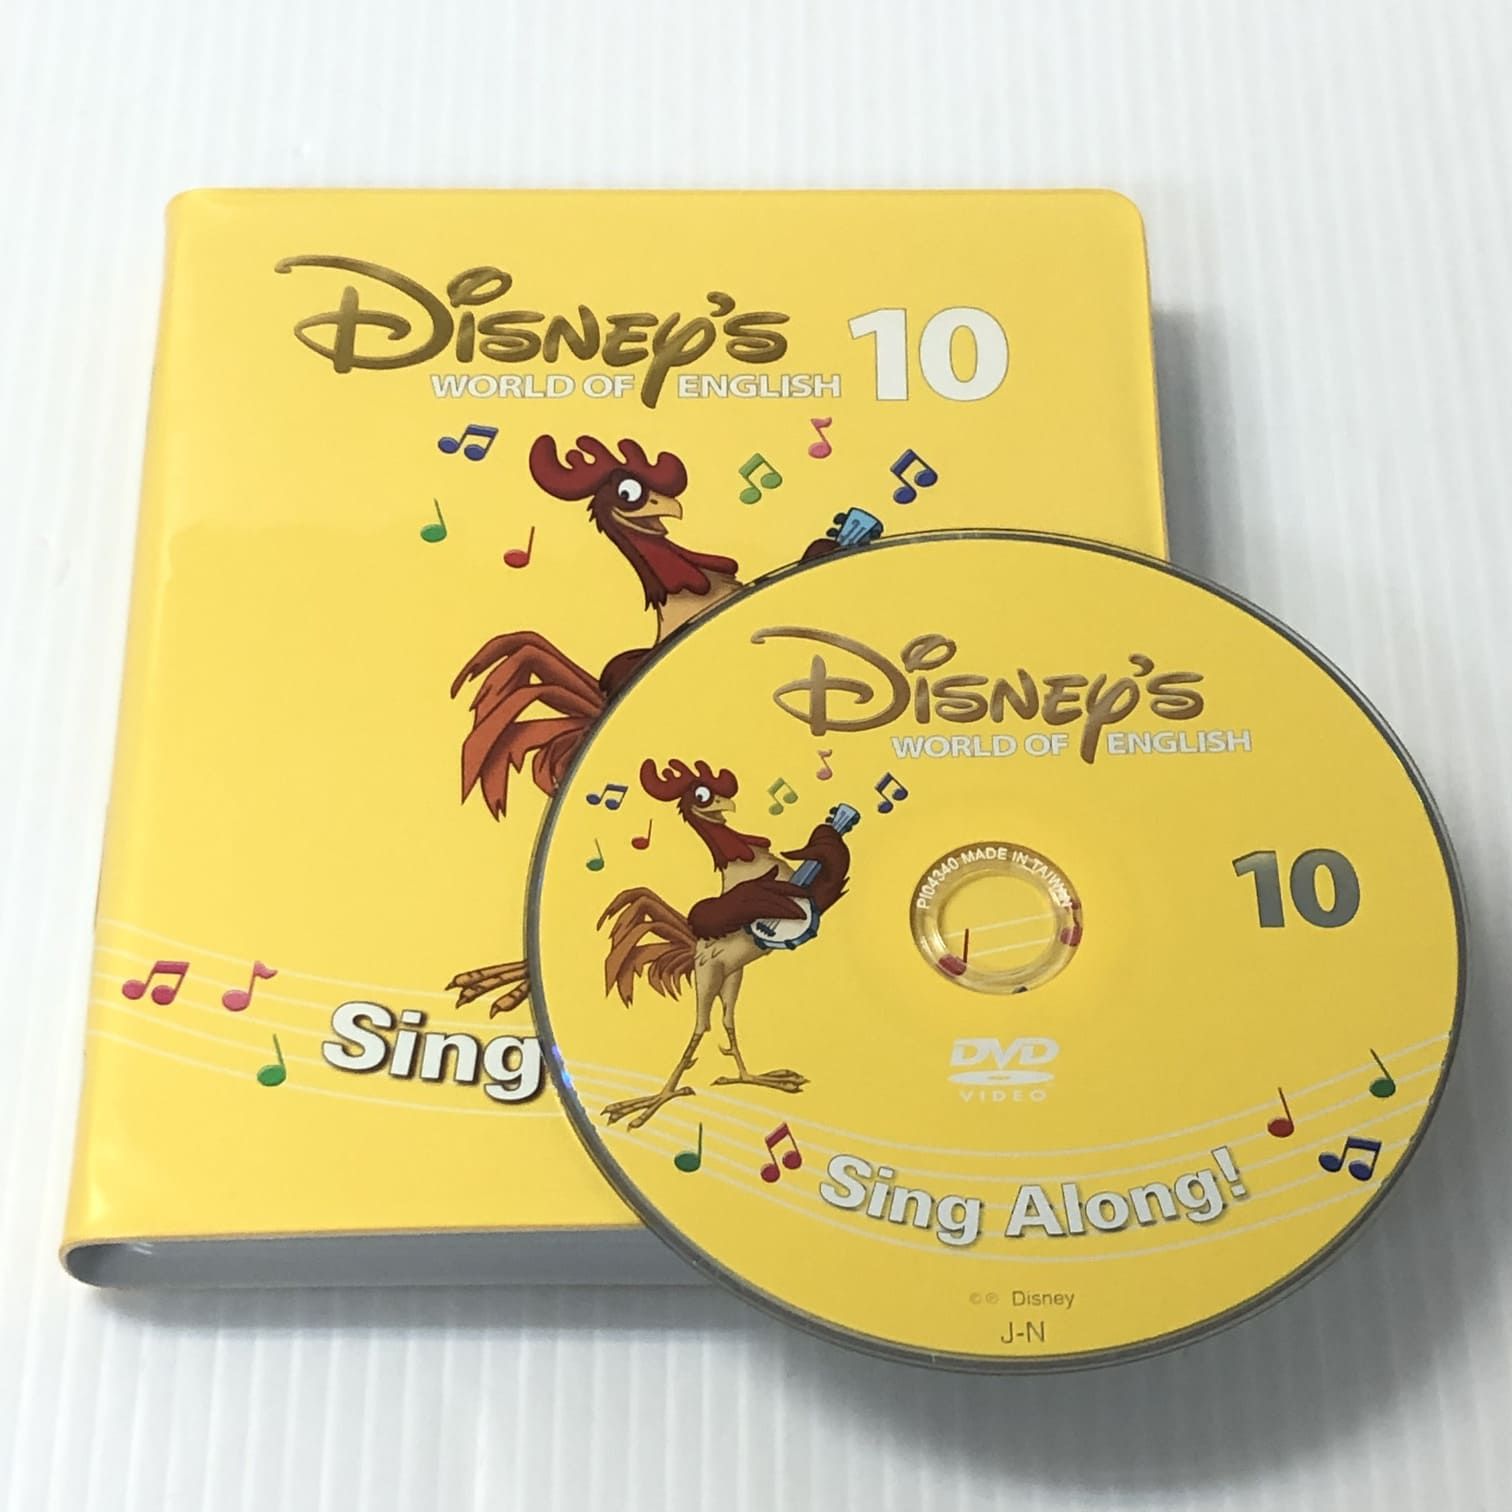 ディズニー英語システム シングアロング DVD 新子役 10巻 b-593 DWE